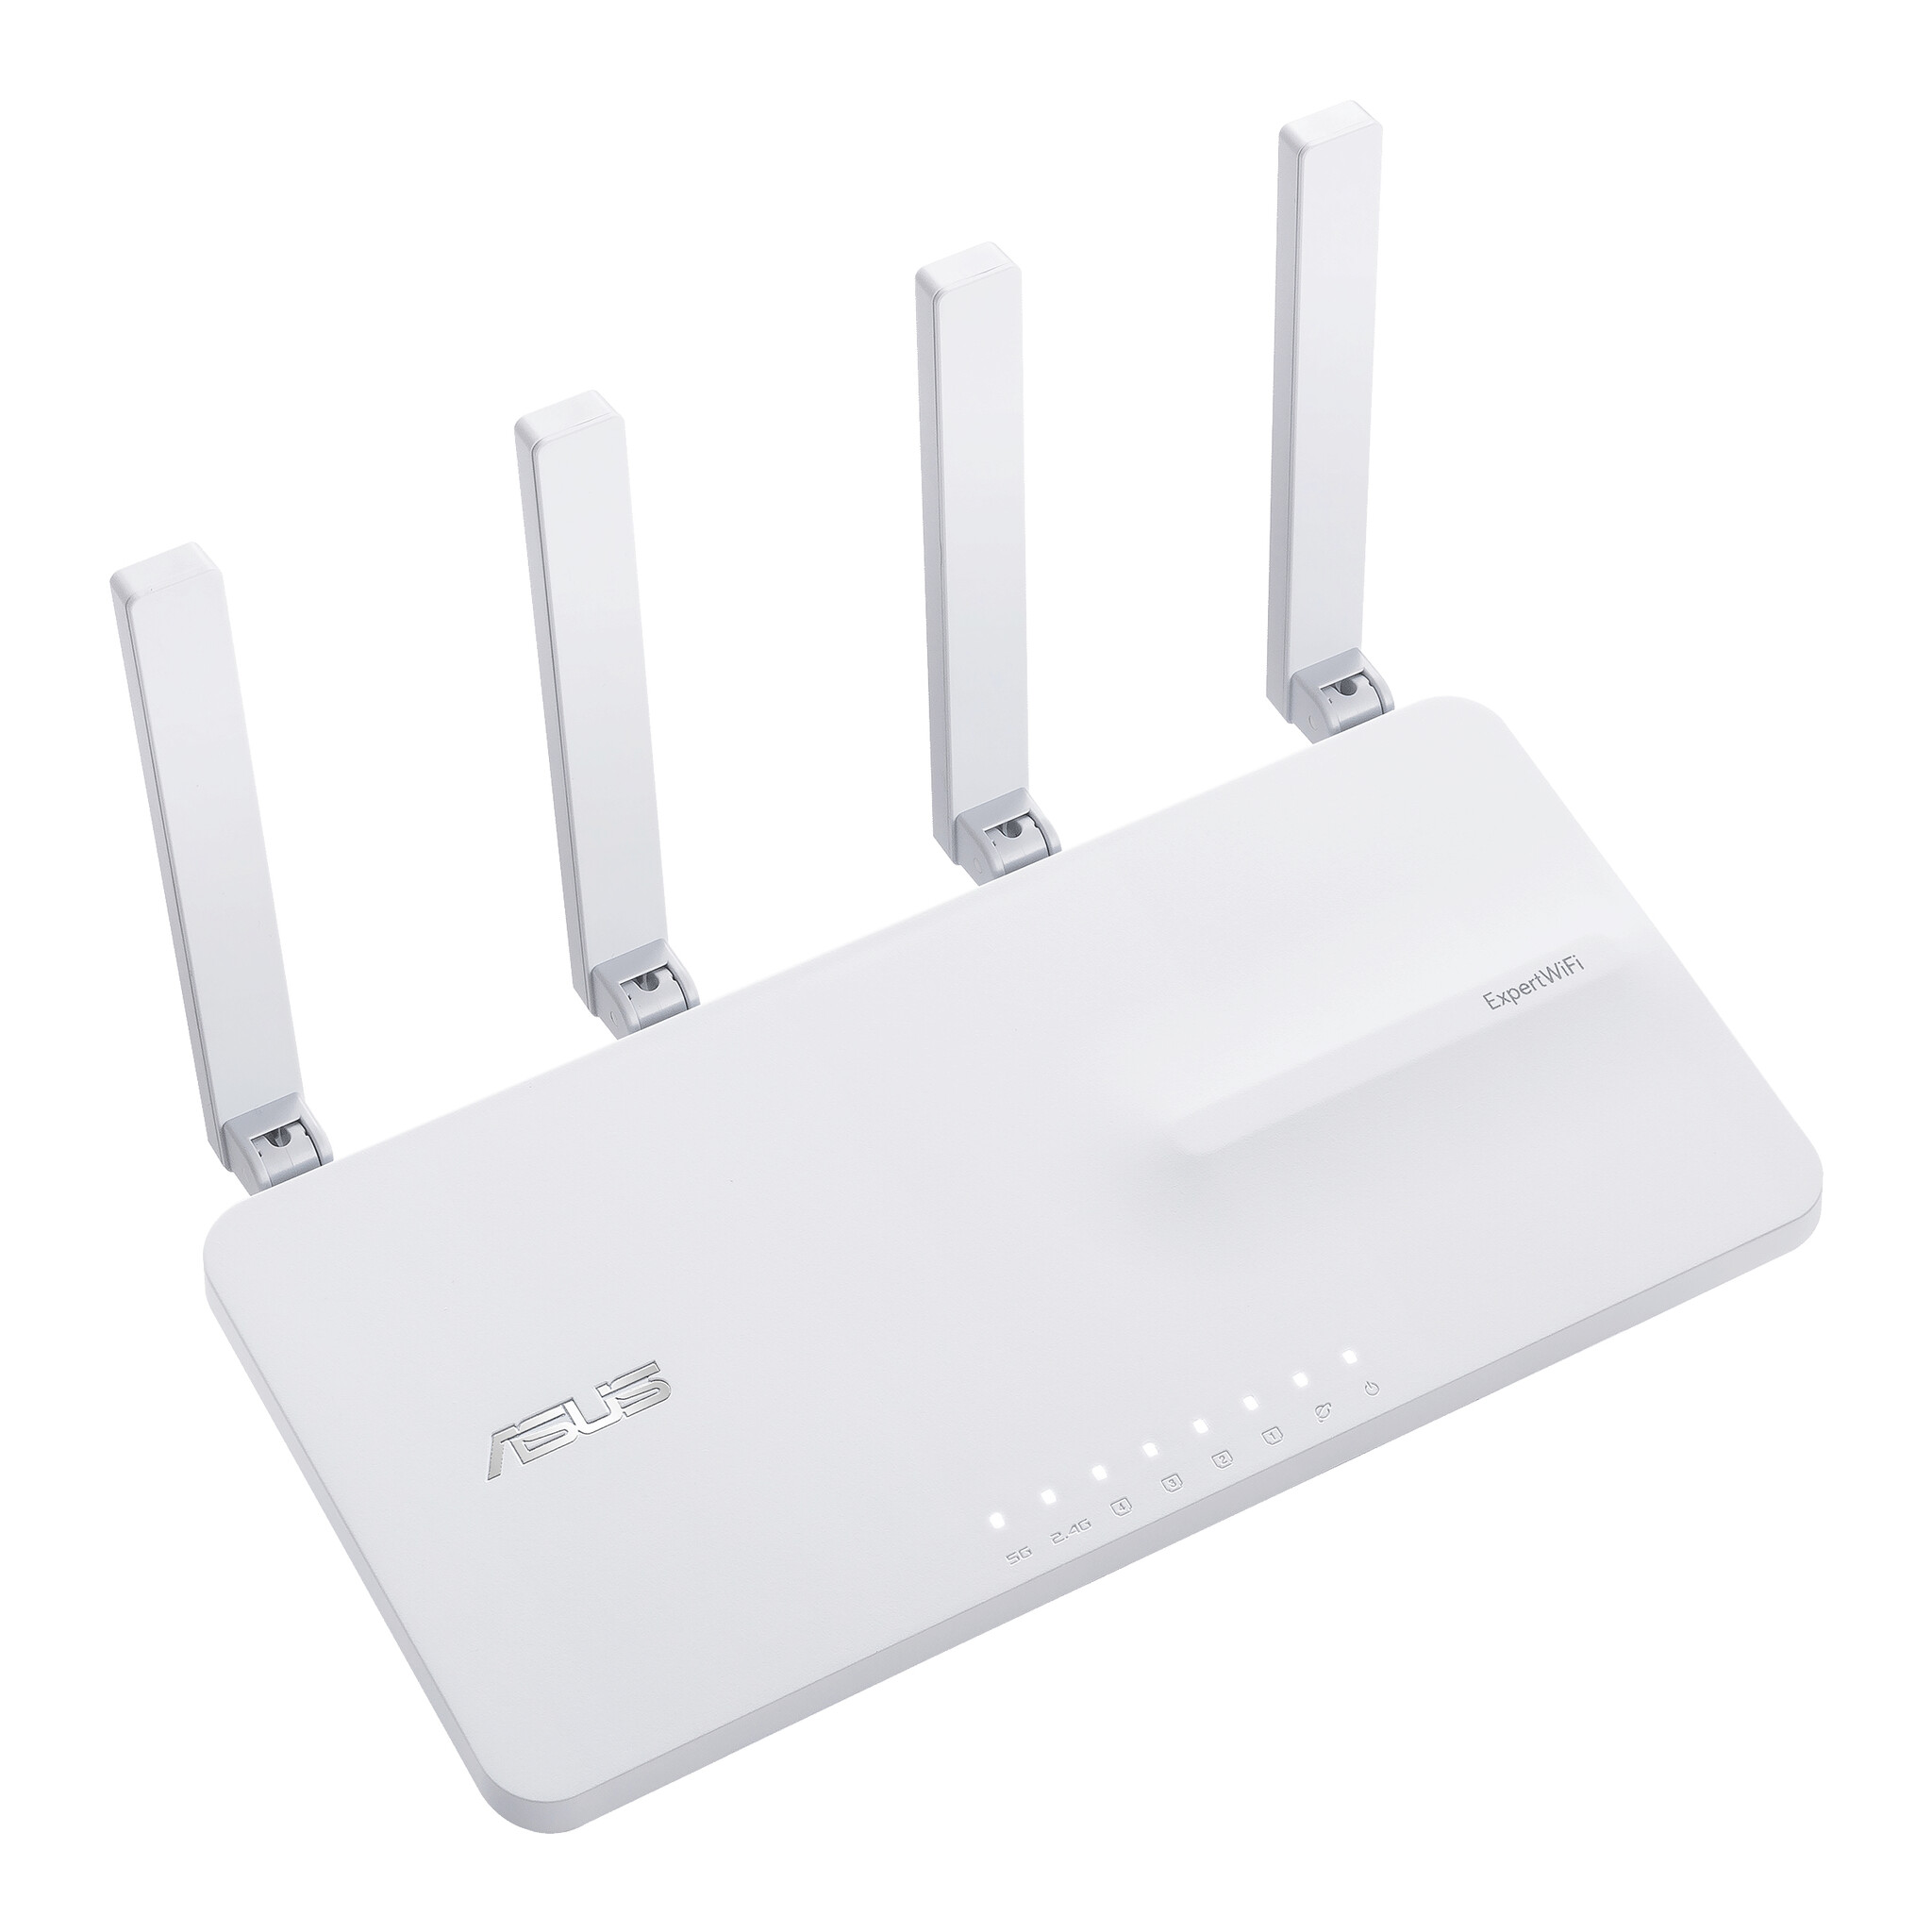 passage Betsy Trotwood kravle ASUS EBR63 – Expert WiFi trådløs router Gigabit Ethernet Dual-band (2,4 GHz  / 5 GHz) Hvid | Secure Data Center